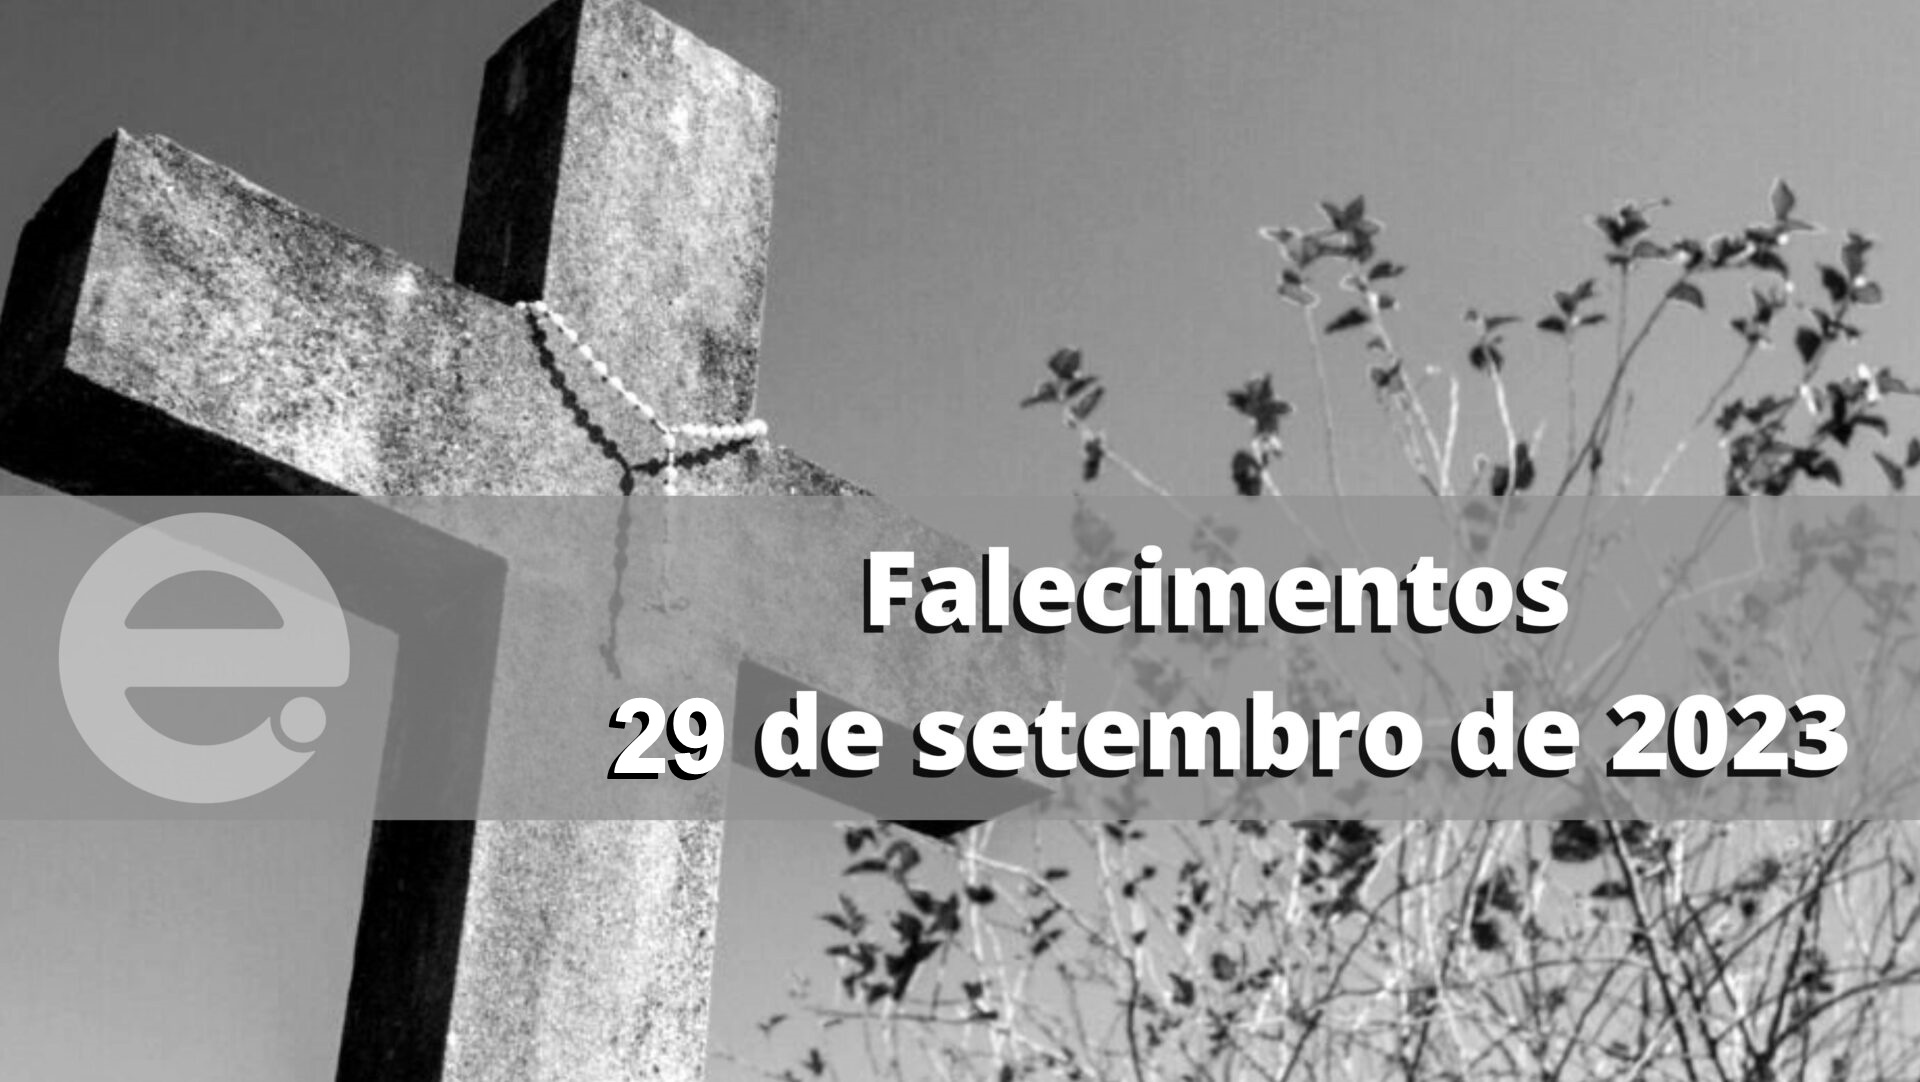 Confira os falecimentos desta sexta-feira, 29 de setembro de 2023, em Limeira